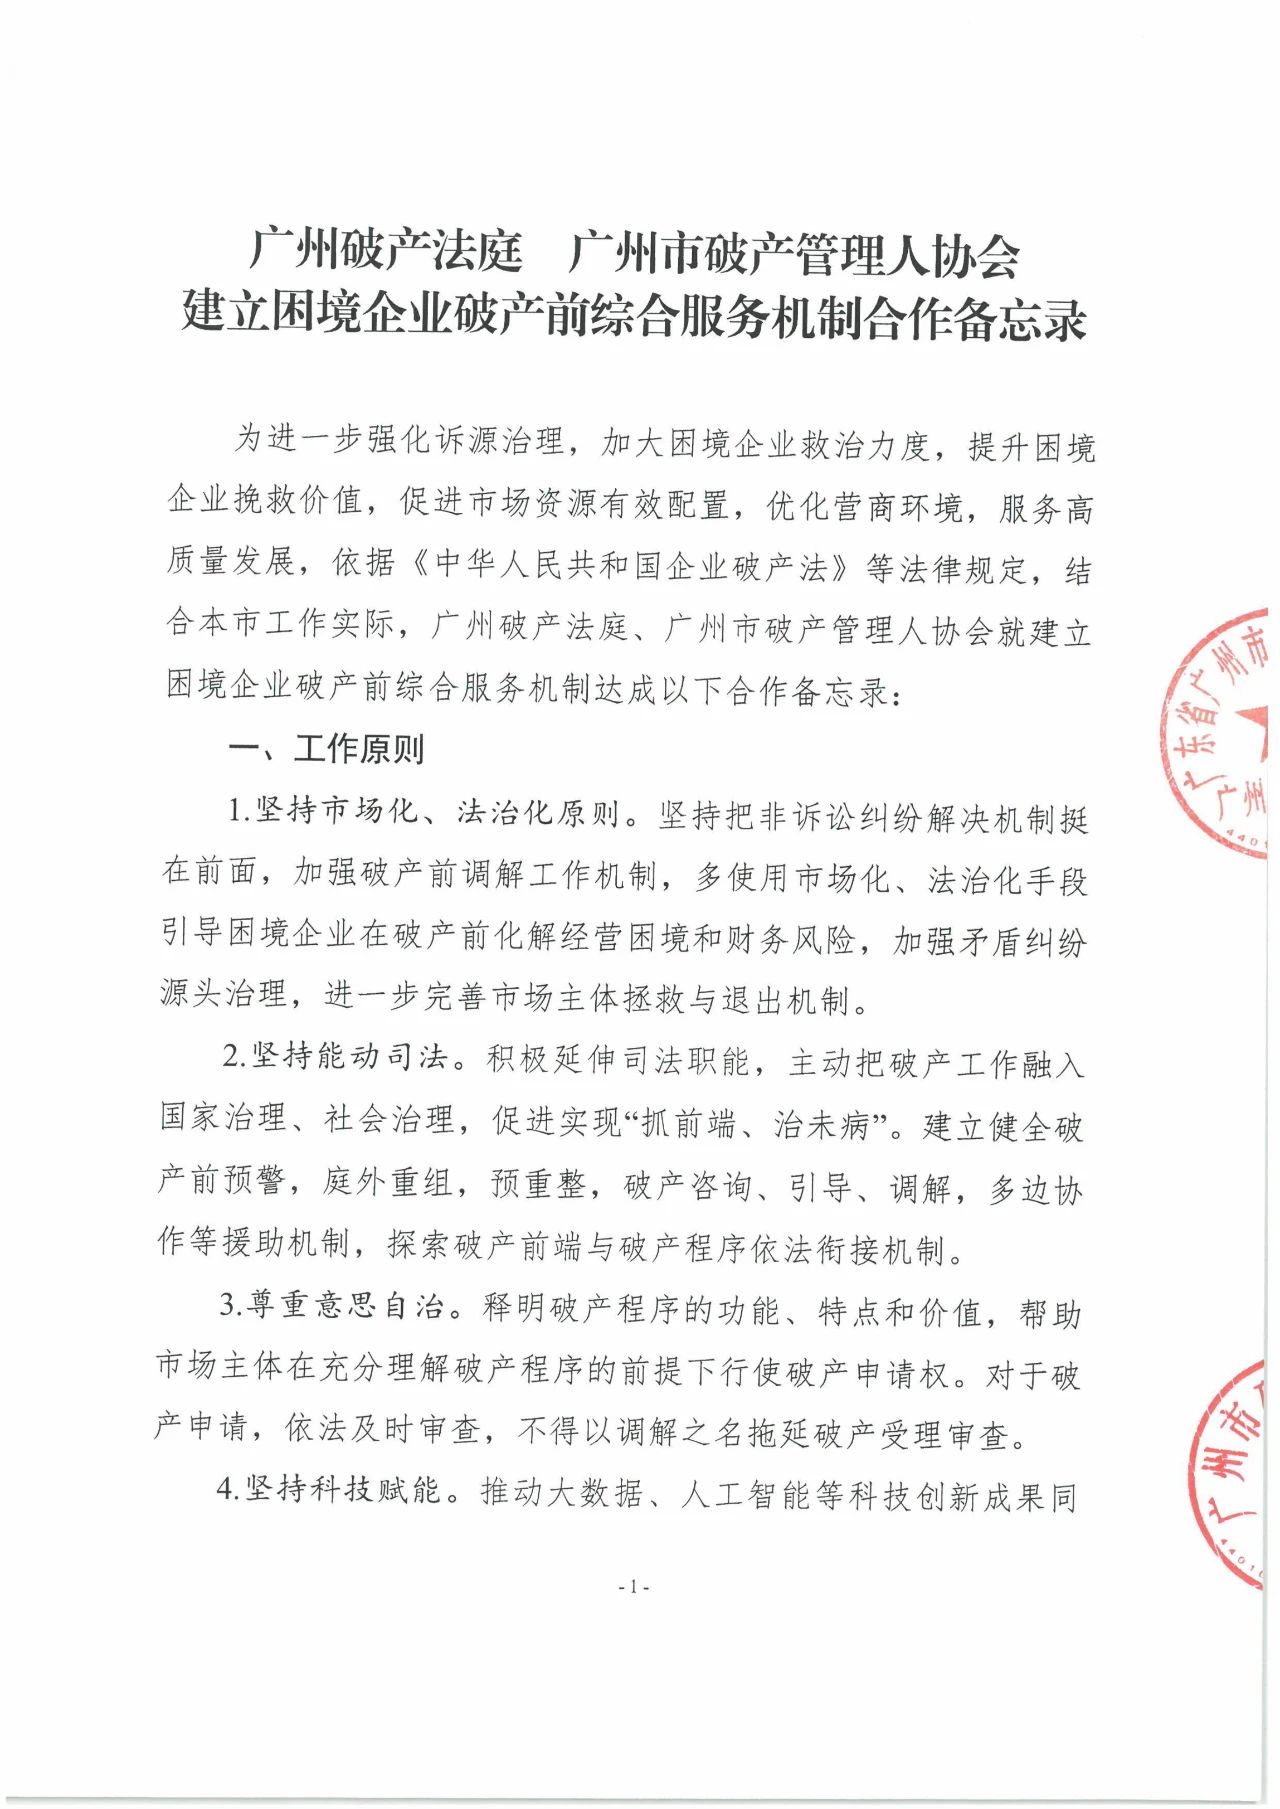 广州破产法庭 广州市破产管理人协会 建立困境企业破产前综合服务机制合作备忘录